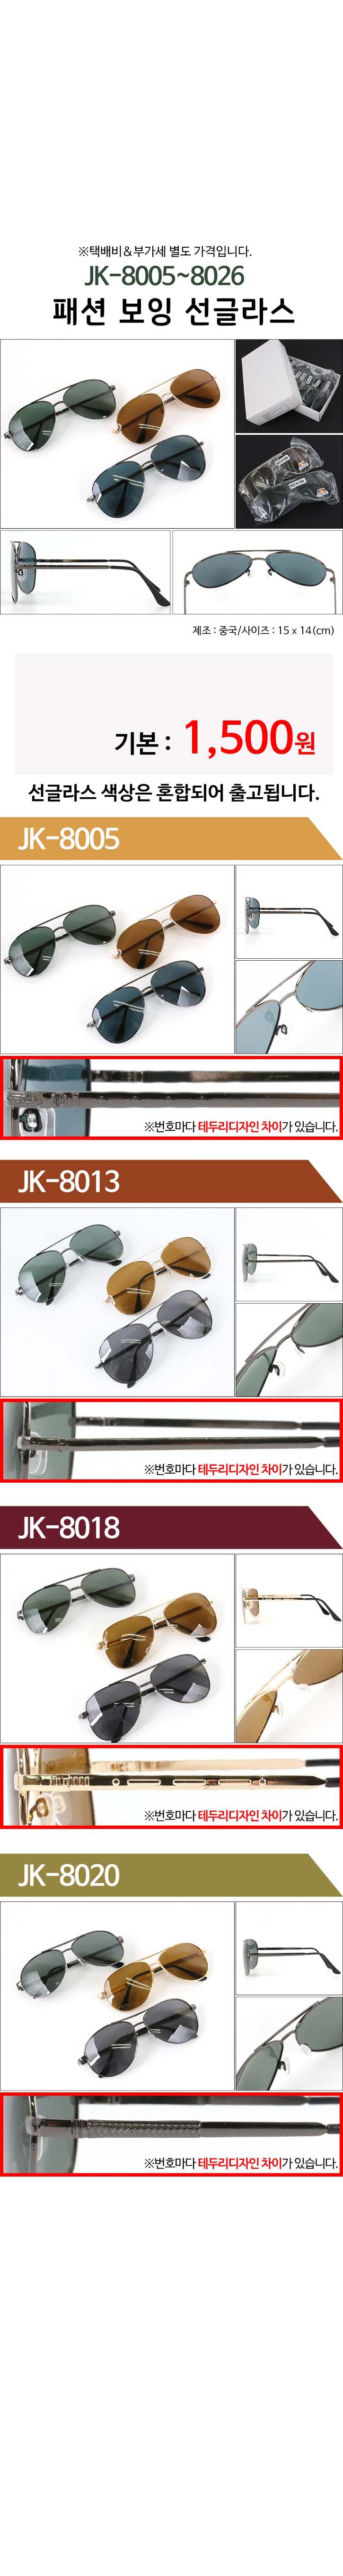 JK-8005~8026-패션-보잉-선글라스.jpg